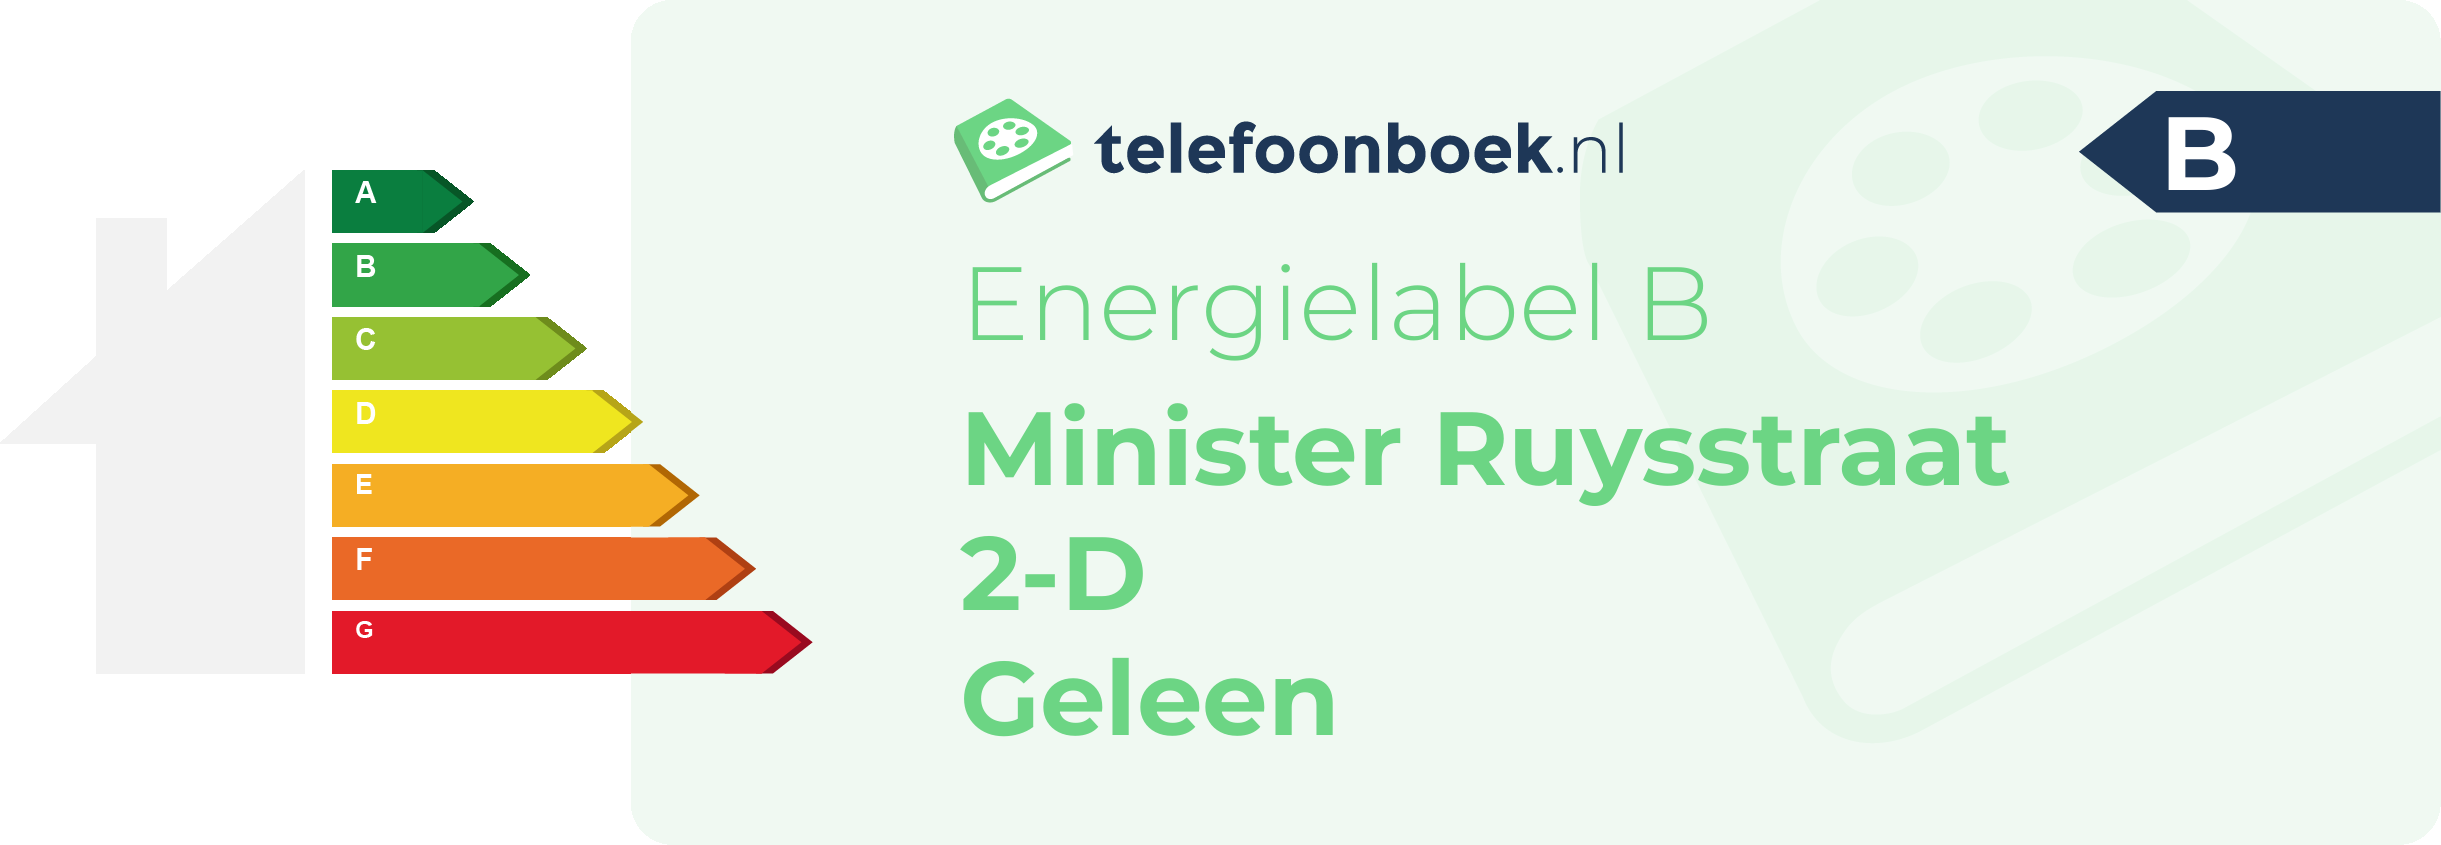 Energielabel Minister Ruysstraat 2-D Geleen